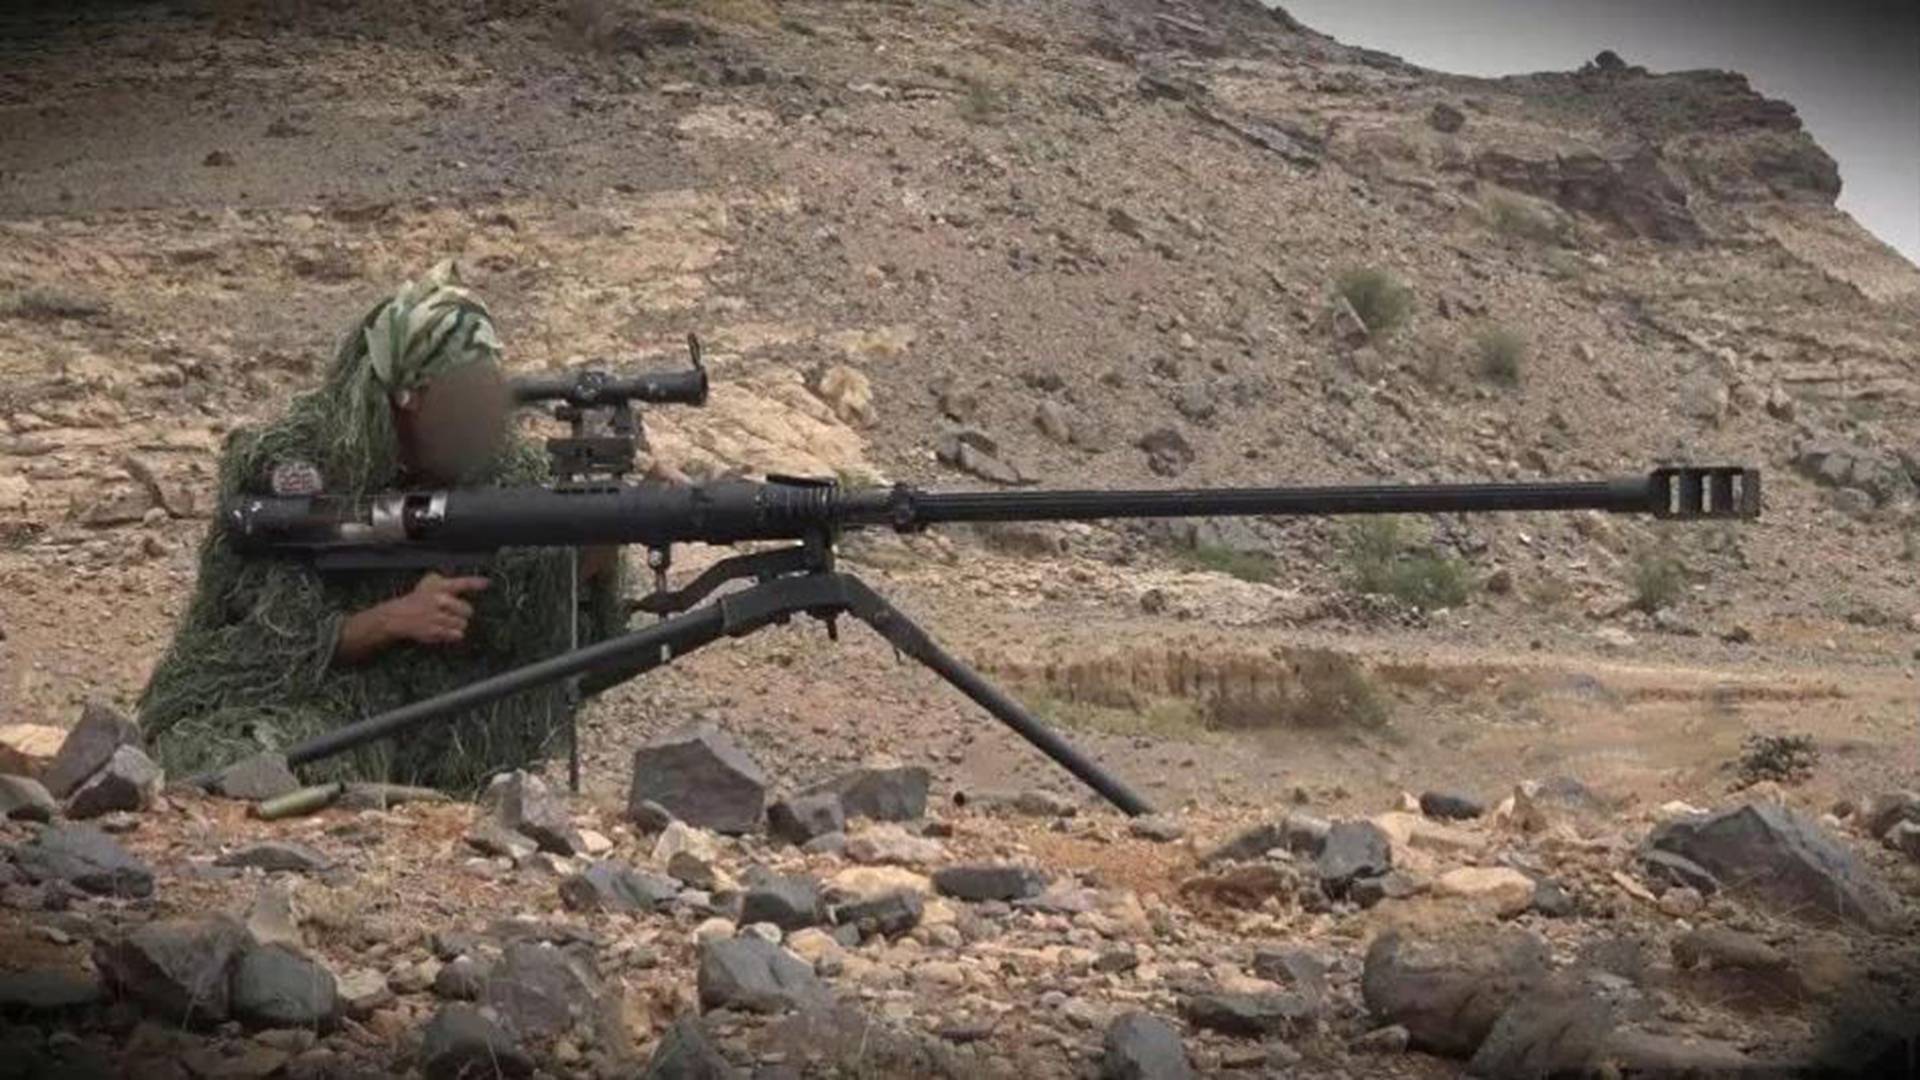 原创也门魔改反器材狙击炮构造简单且外观粗糙火力效果十分强悍